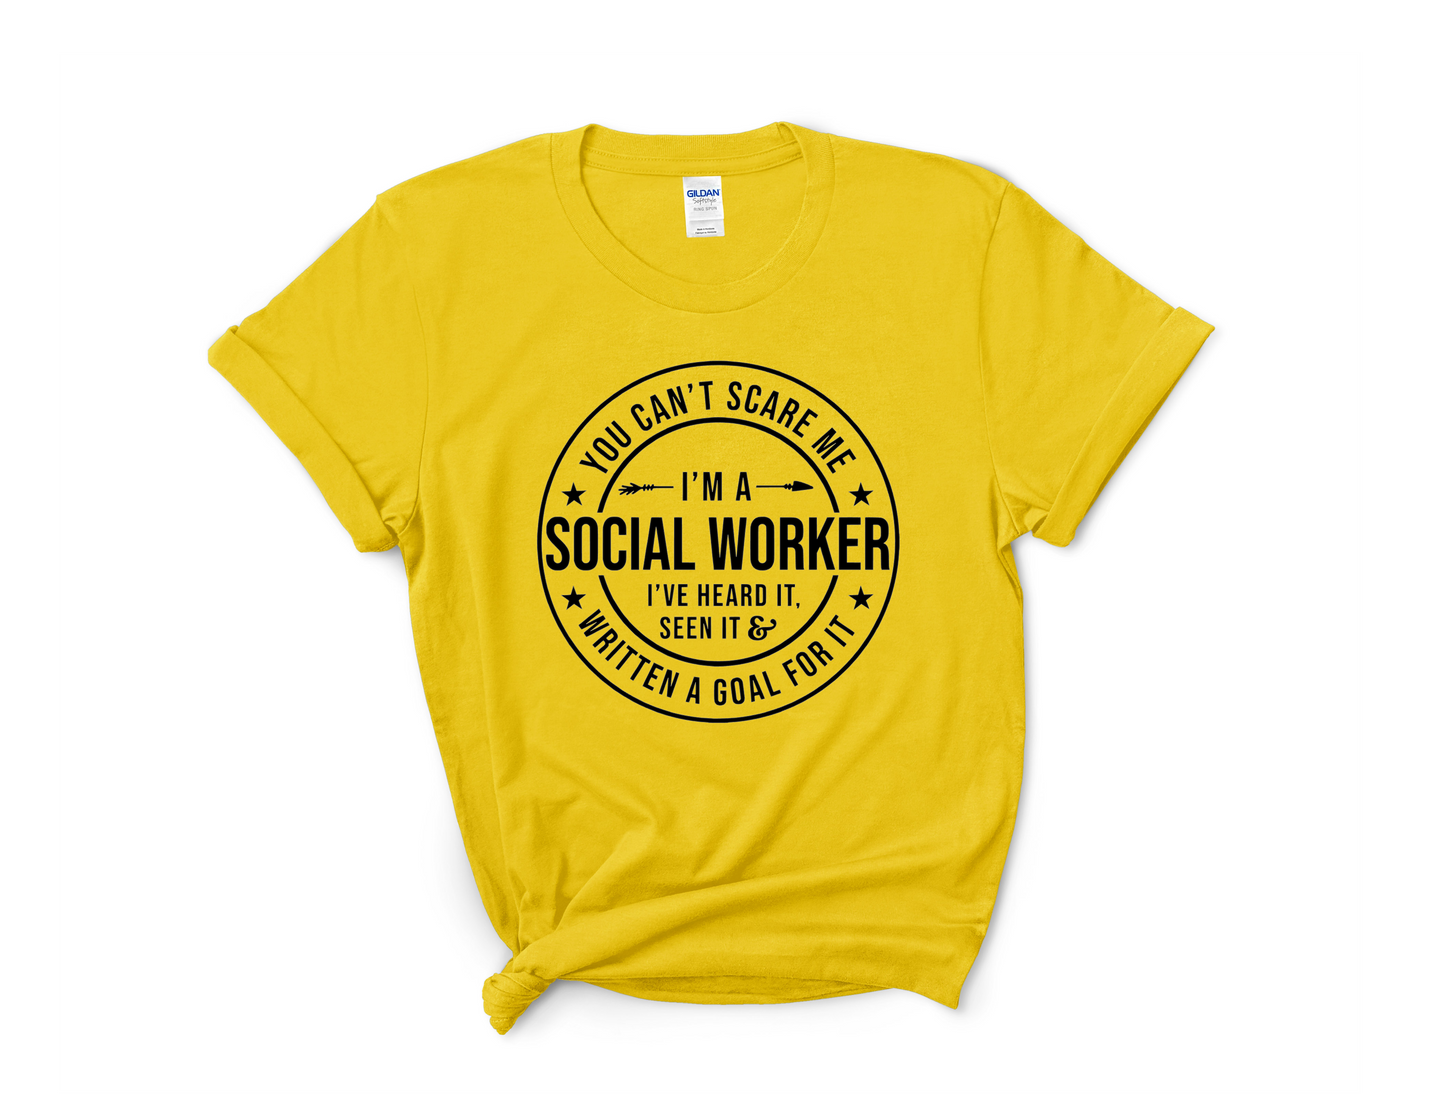 Social Worker Tee